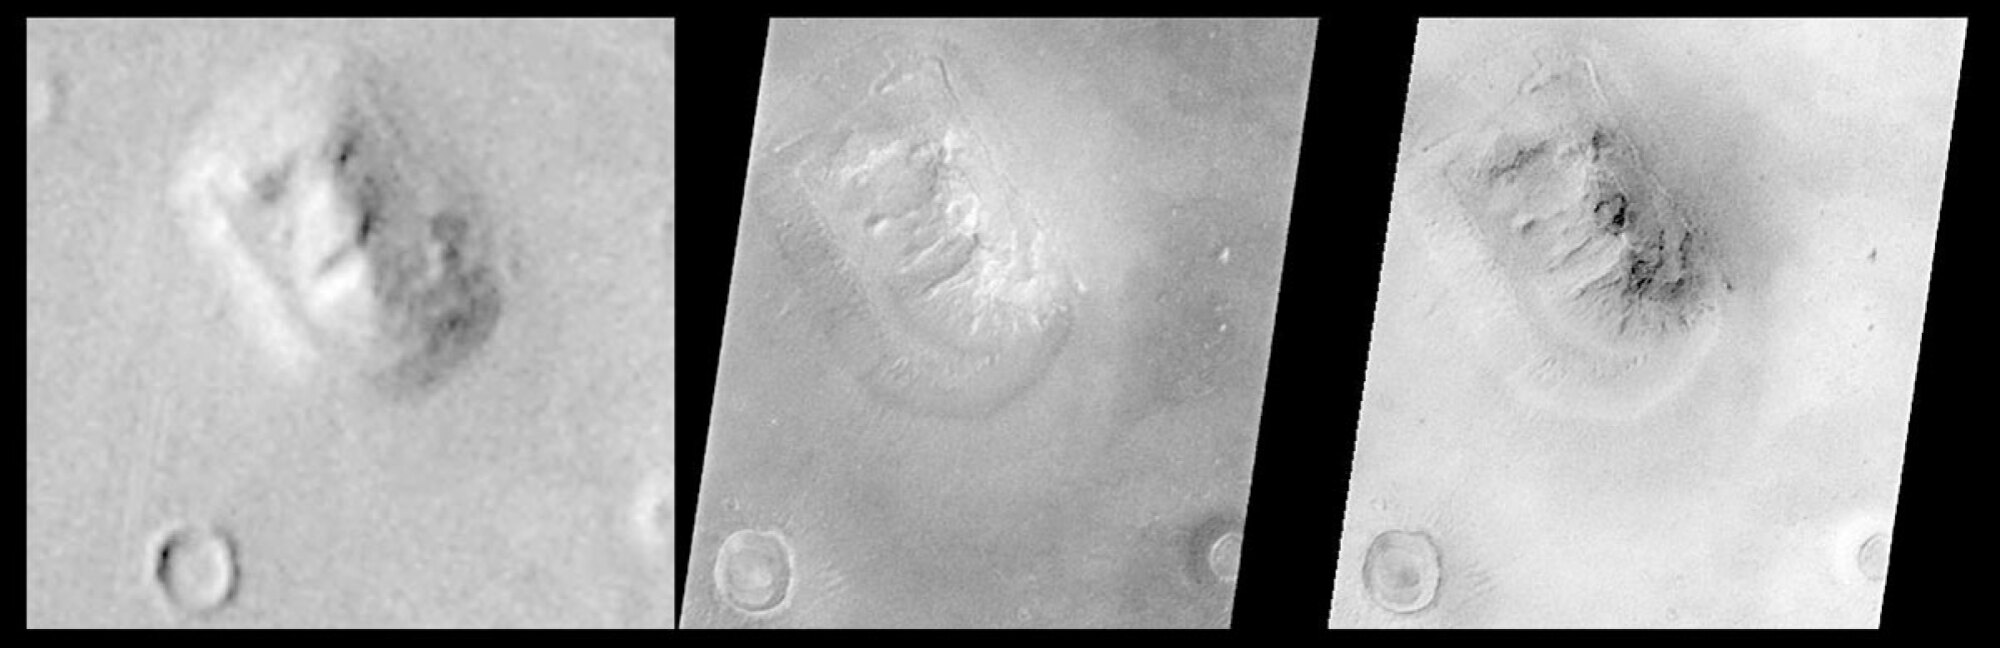 À l'extrême gauche se trouve une image prise par le vaisseau spatial Viking de la NASA en 1976. Les images au centre et à droite ont été prises par Mars Global Surveyor en 1998.